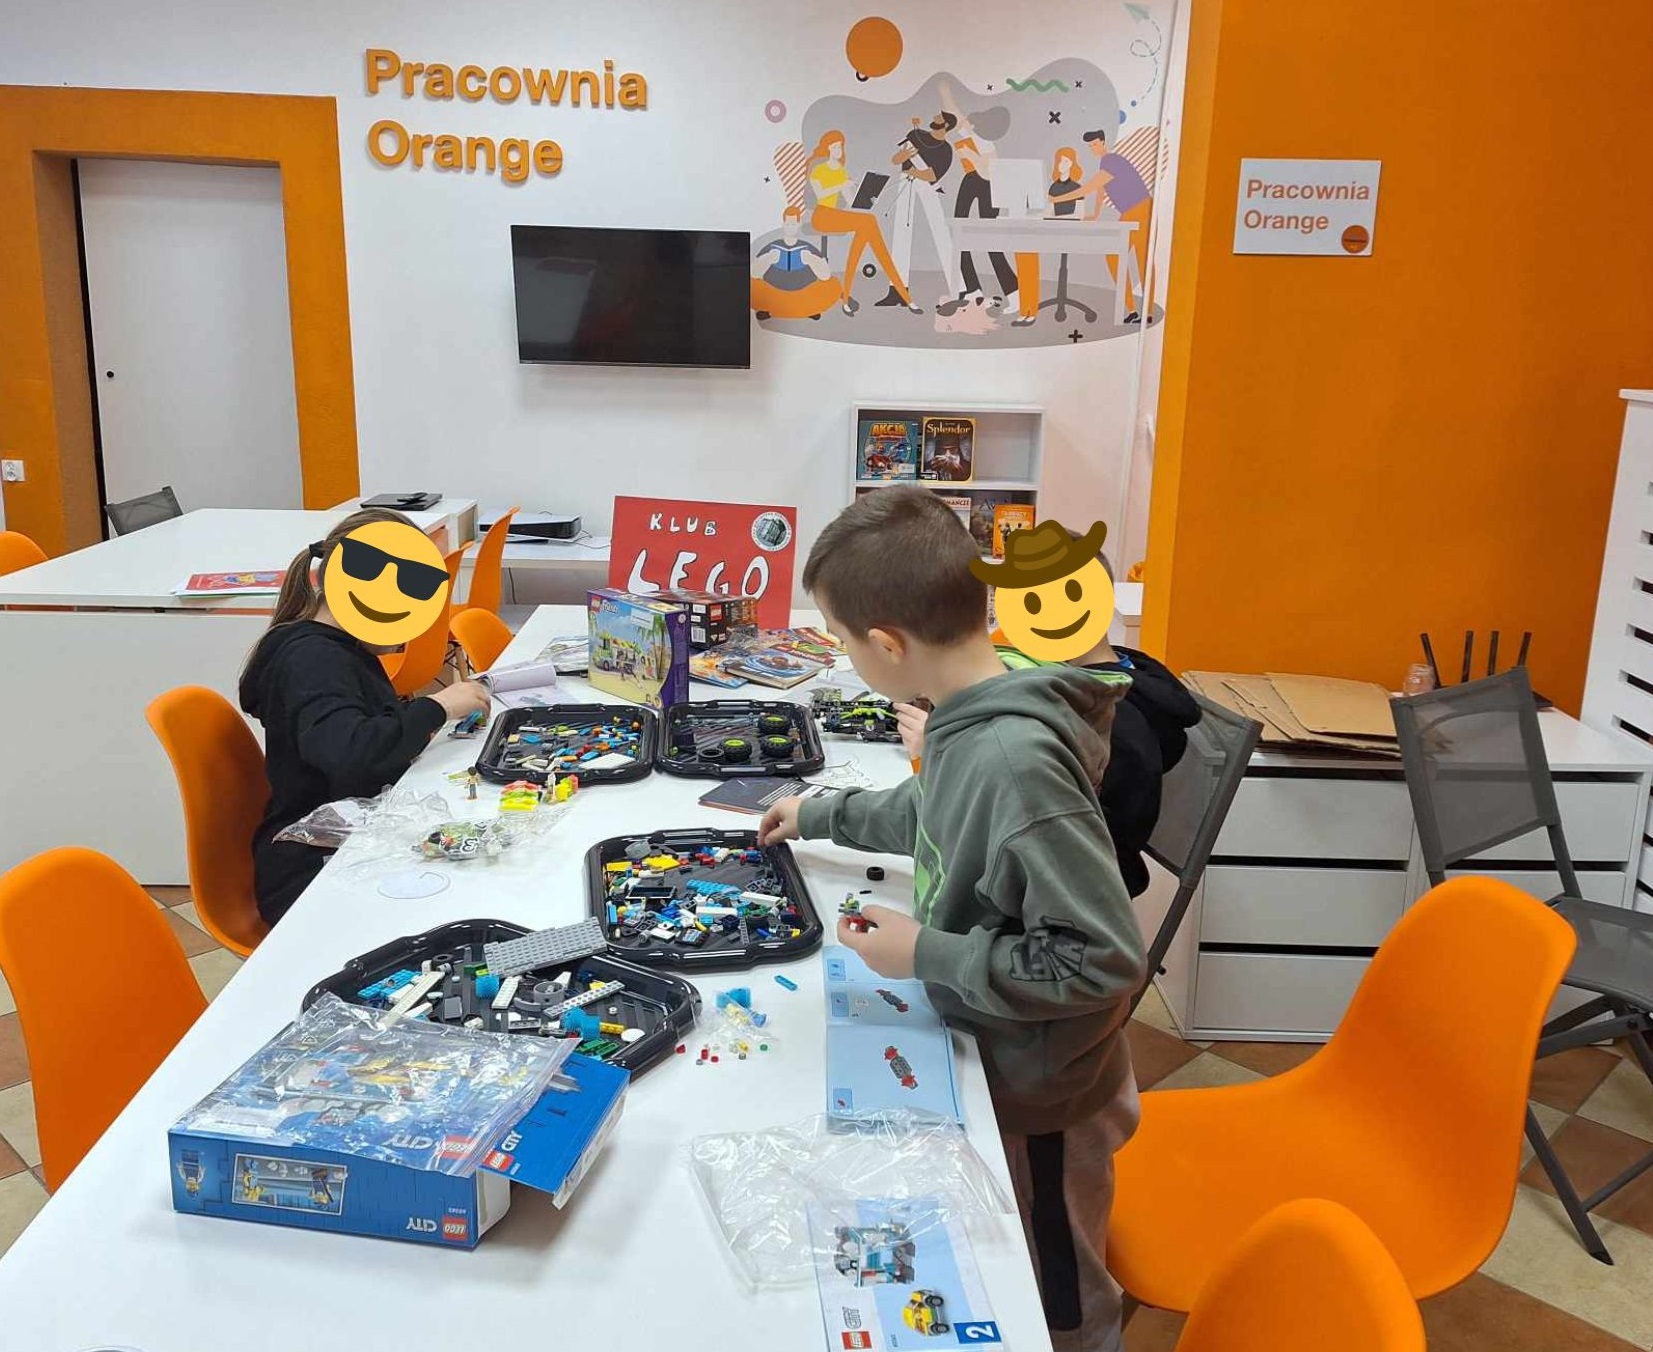 zdjęcie dzieci przy stoliku podczas układania modeli z klocków lego w pracowni orange